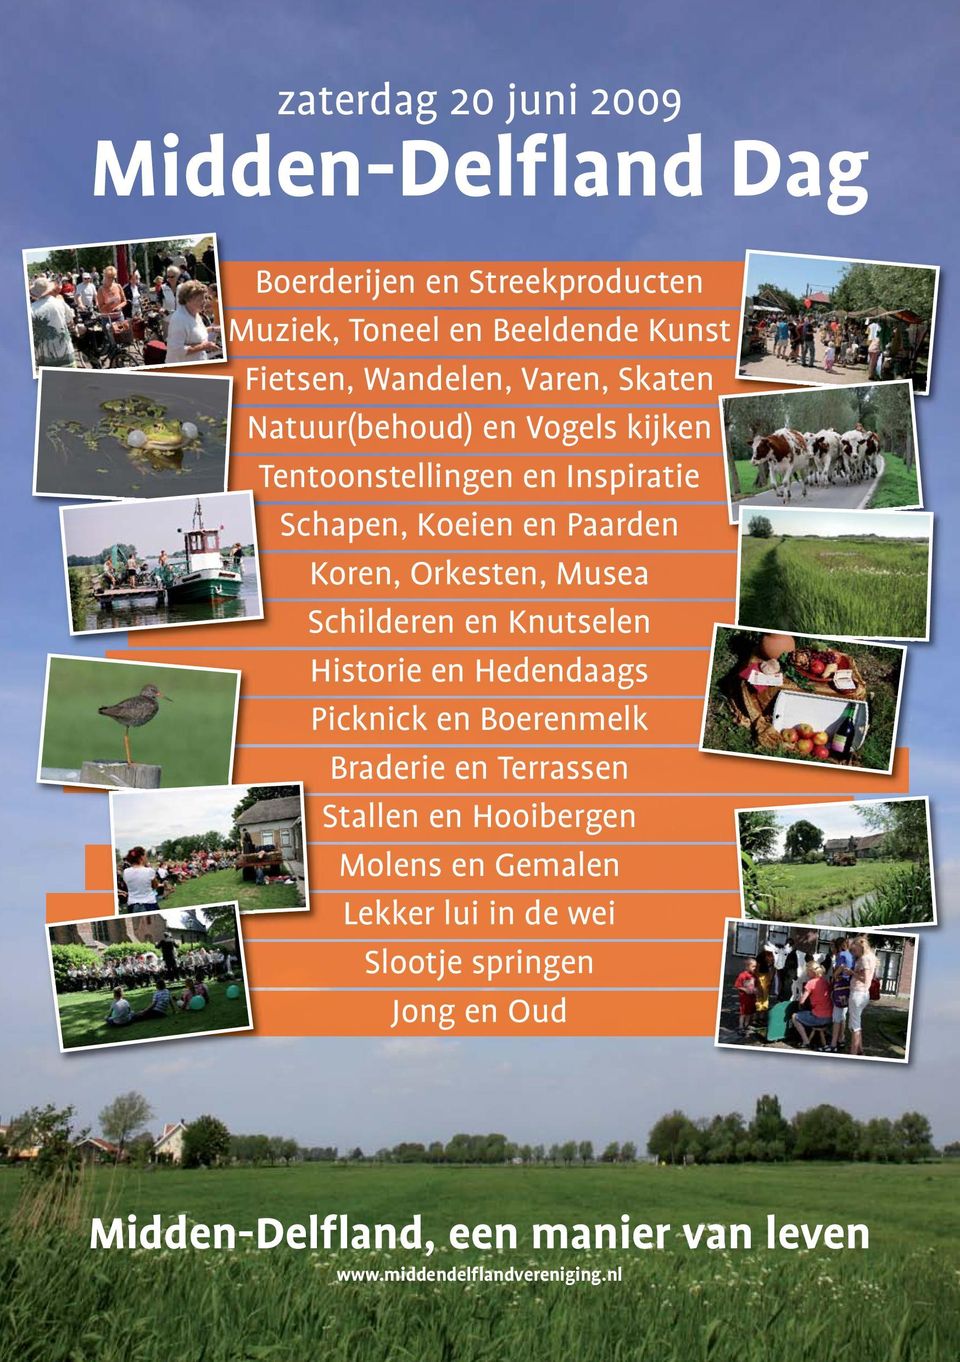 Musea Schilderen en Knutselen Historie en Hedendaags Picknick en Boerenmelk Braderie en Terrassen Stallen en Hooibergen Molens